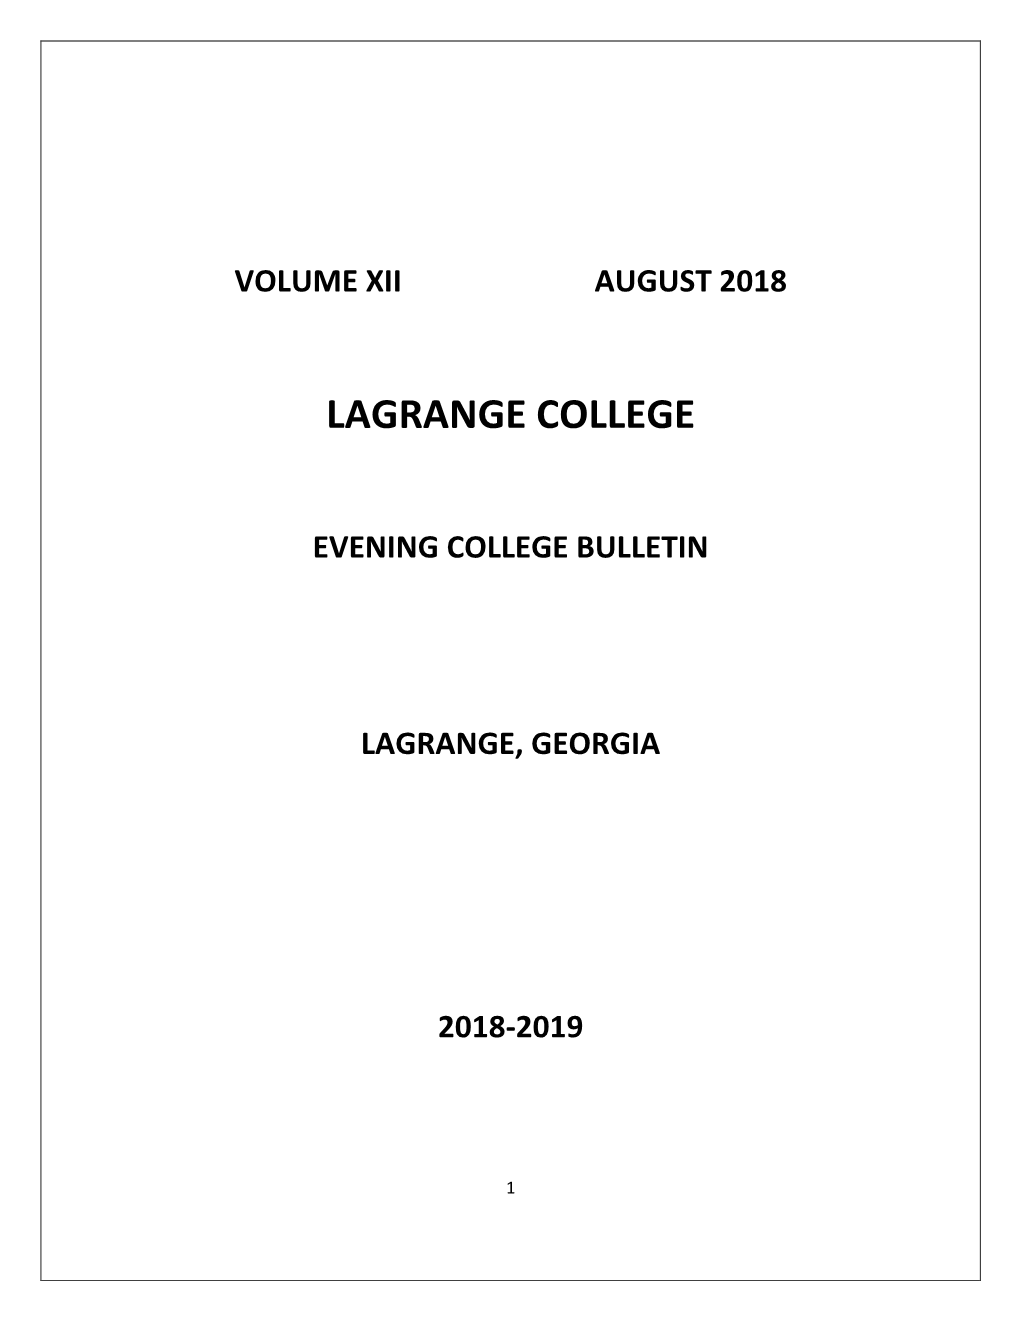 Evening College Bulletin Lagrange, Georgia 2018-2019